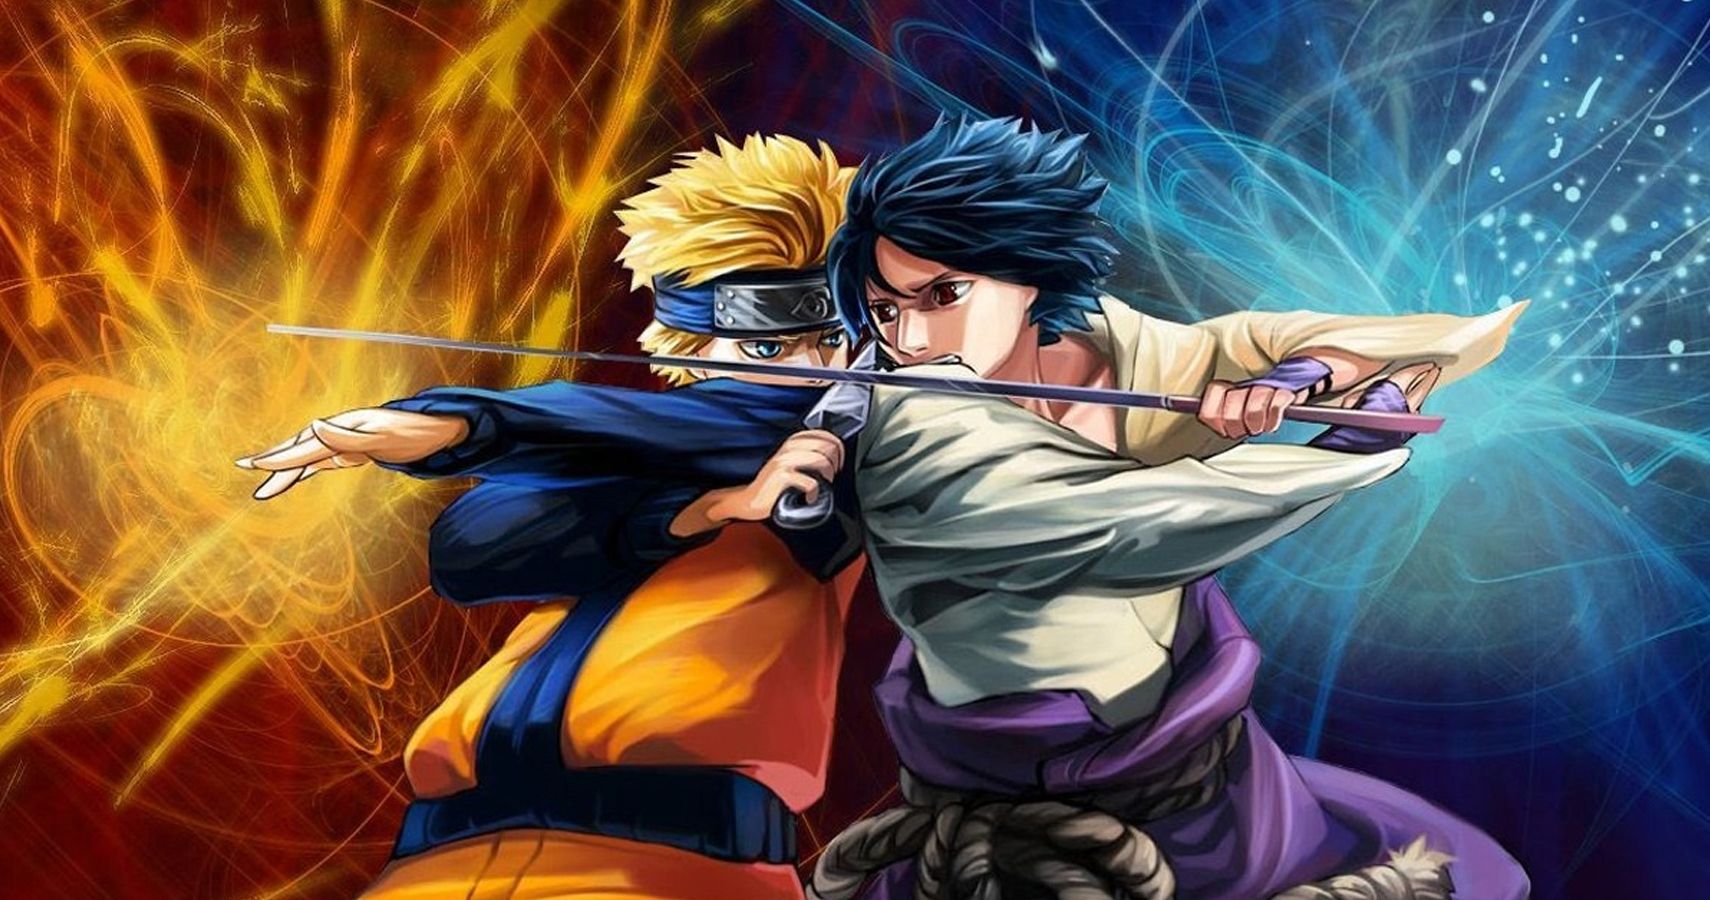 Strongest Naruto Anime Characters: Sasuke Uchiha, Itachi Uchiha & More